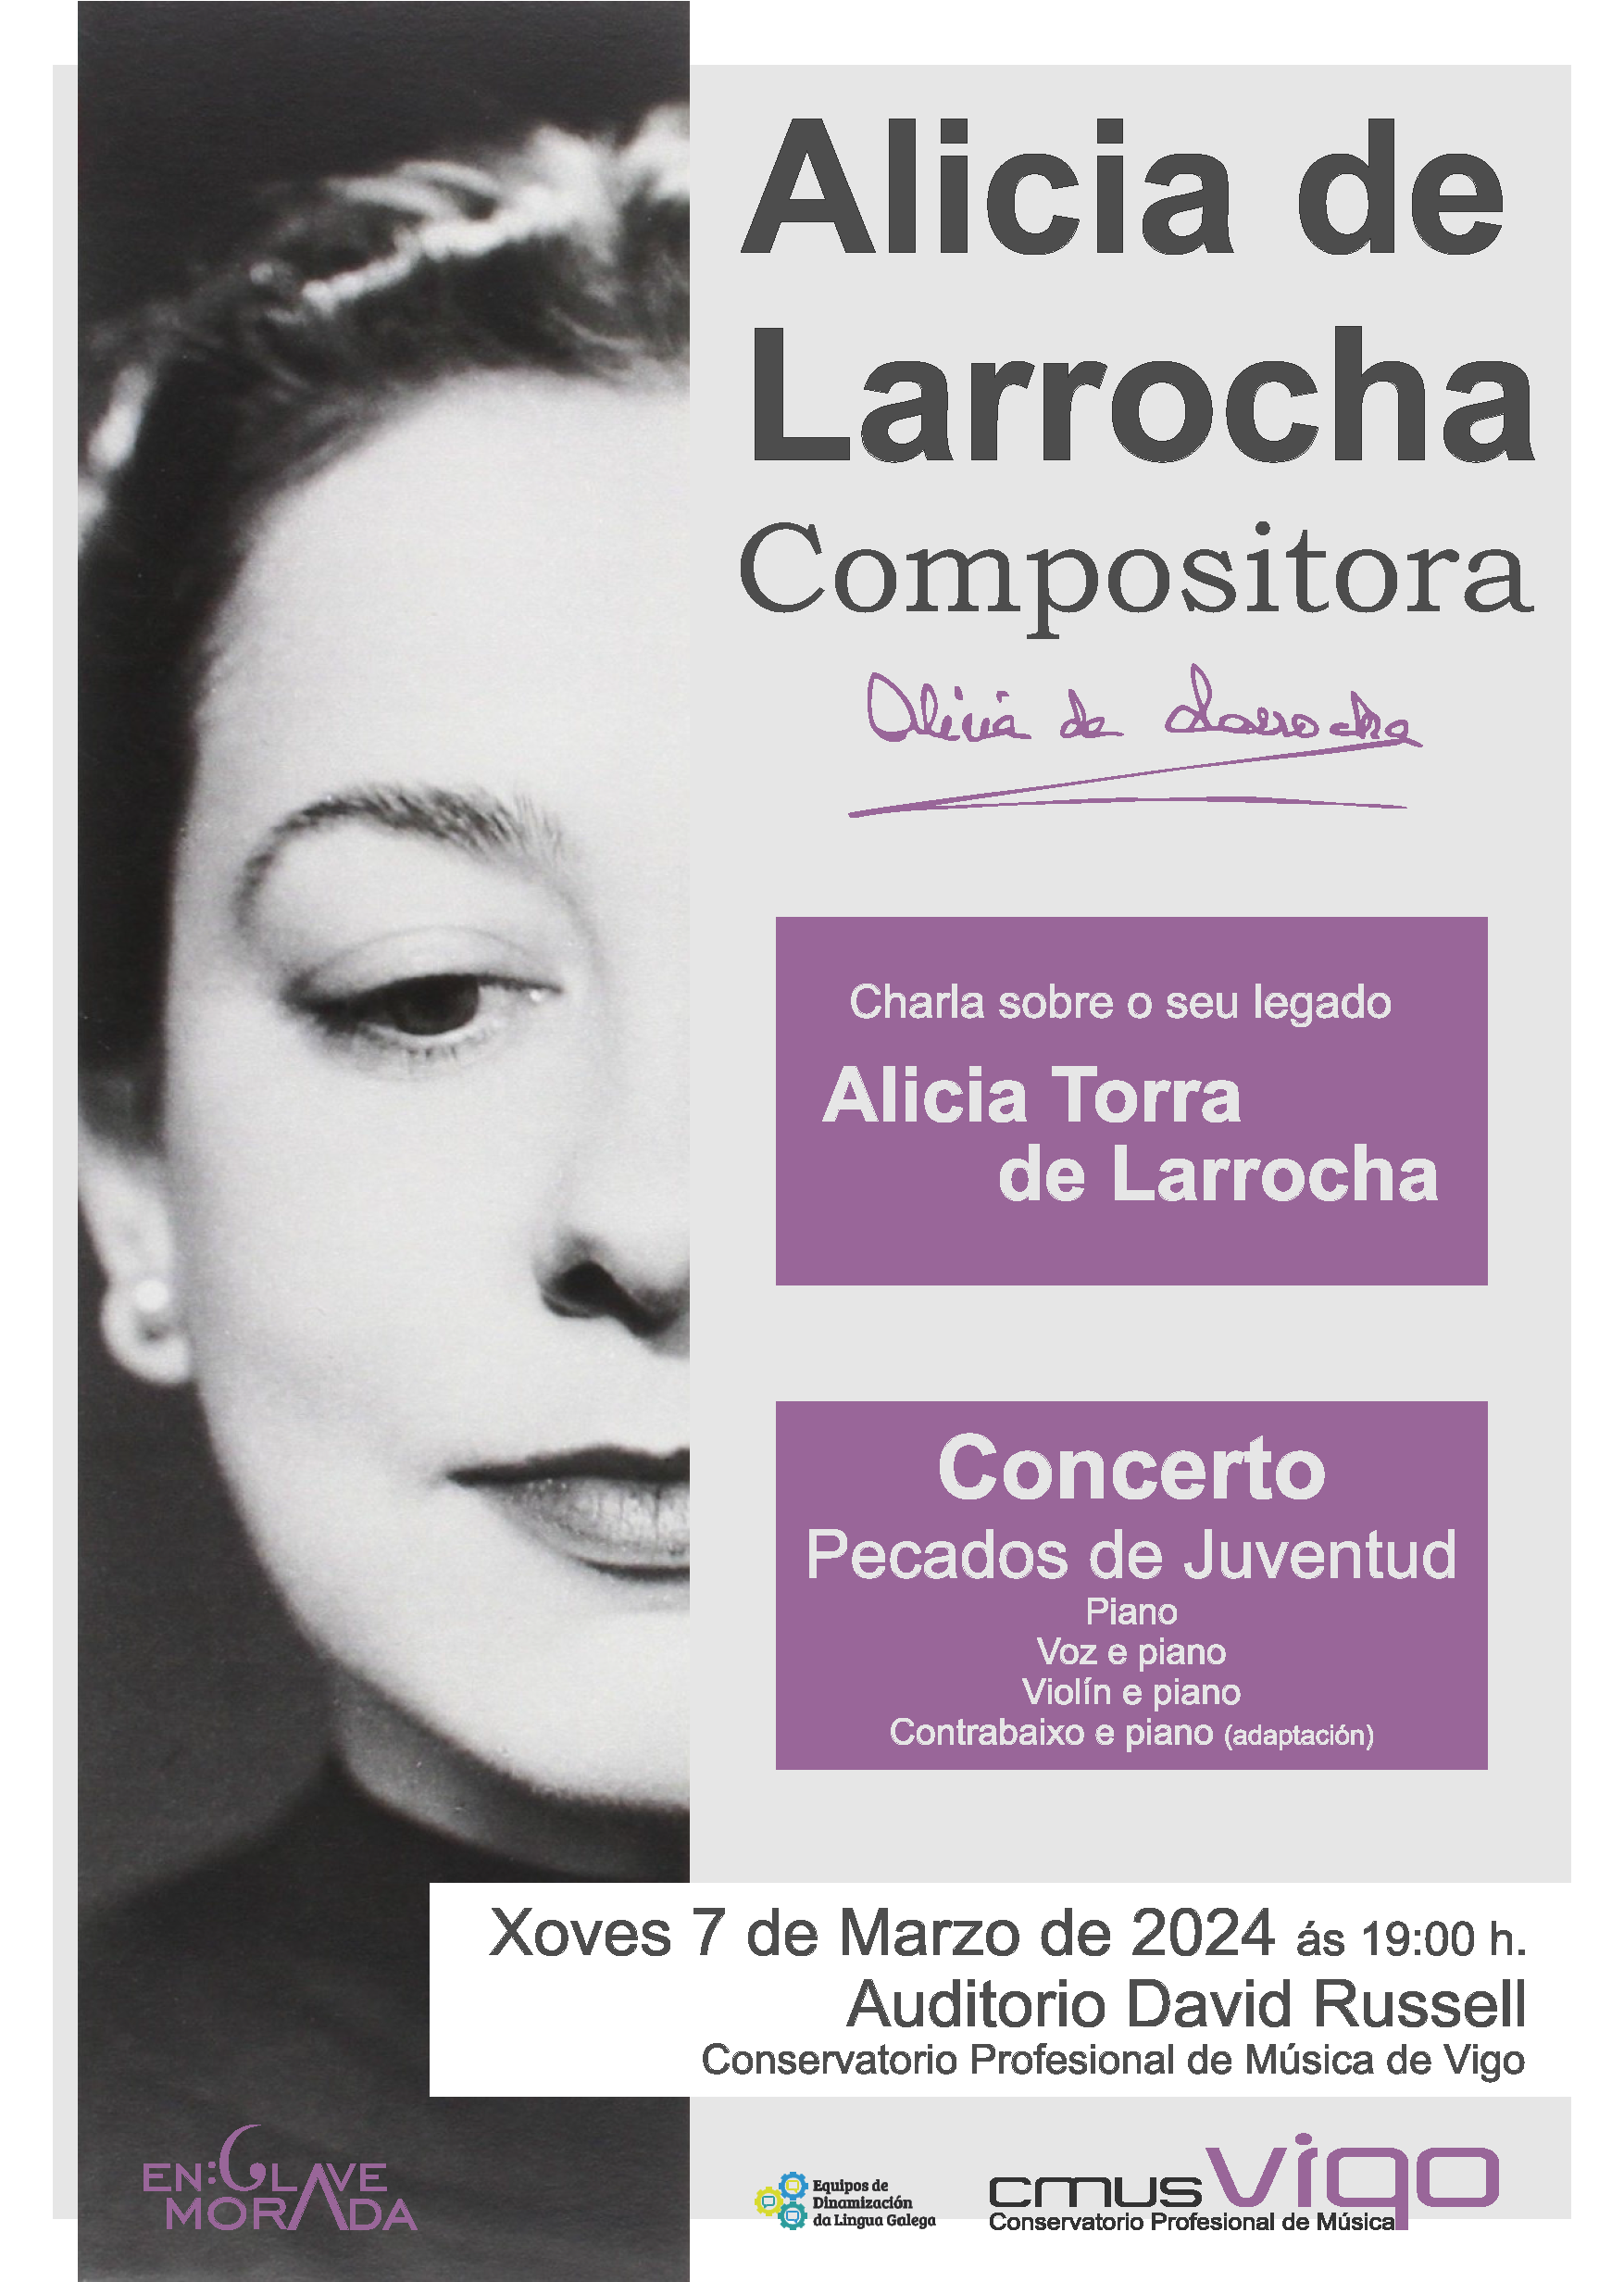 Concerto con obras de Alicia de Larrocha